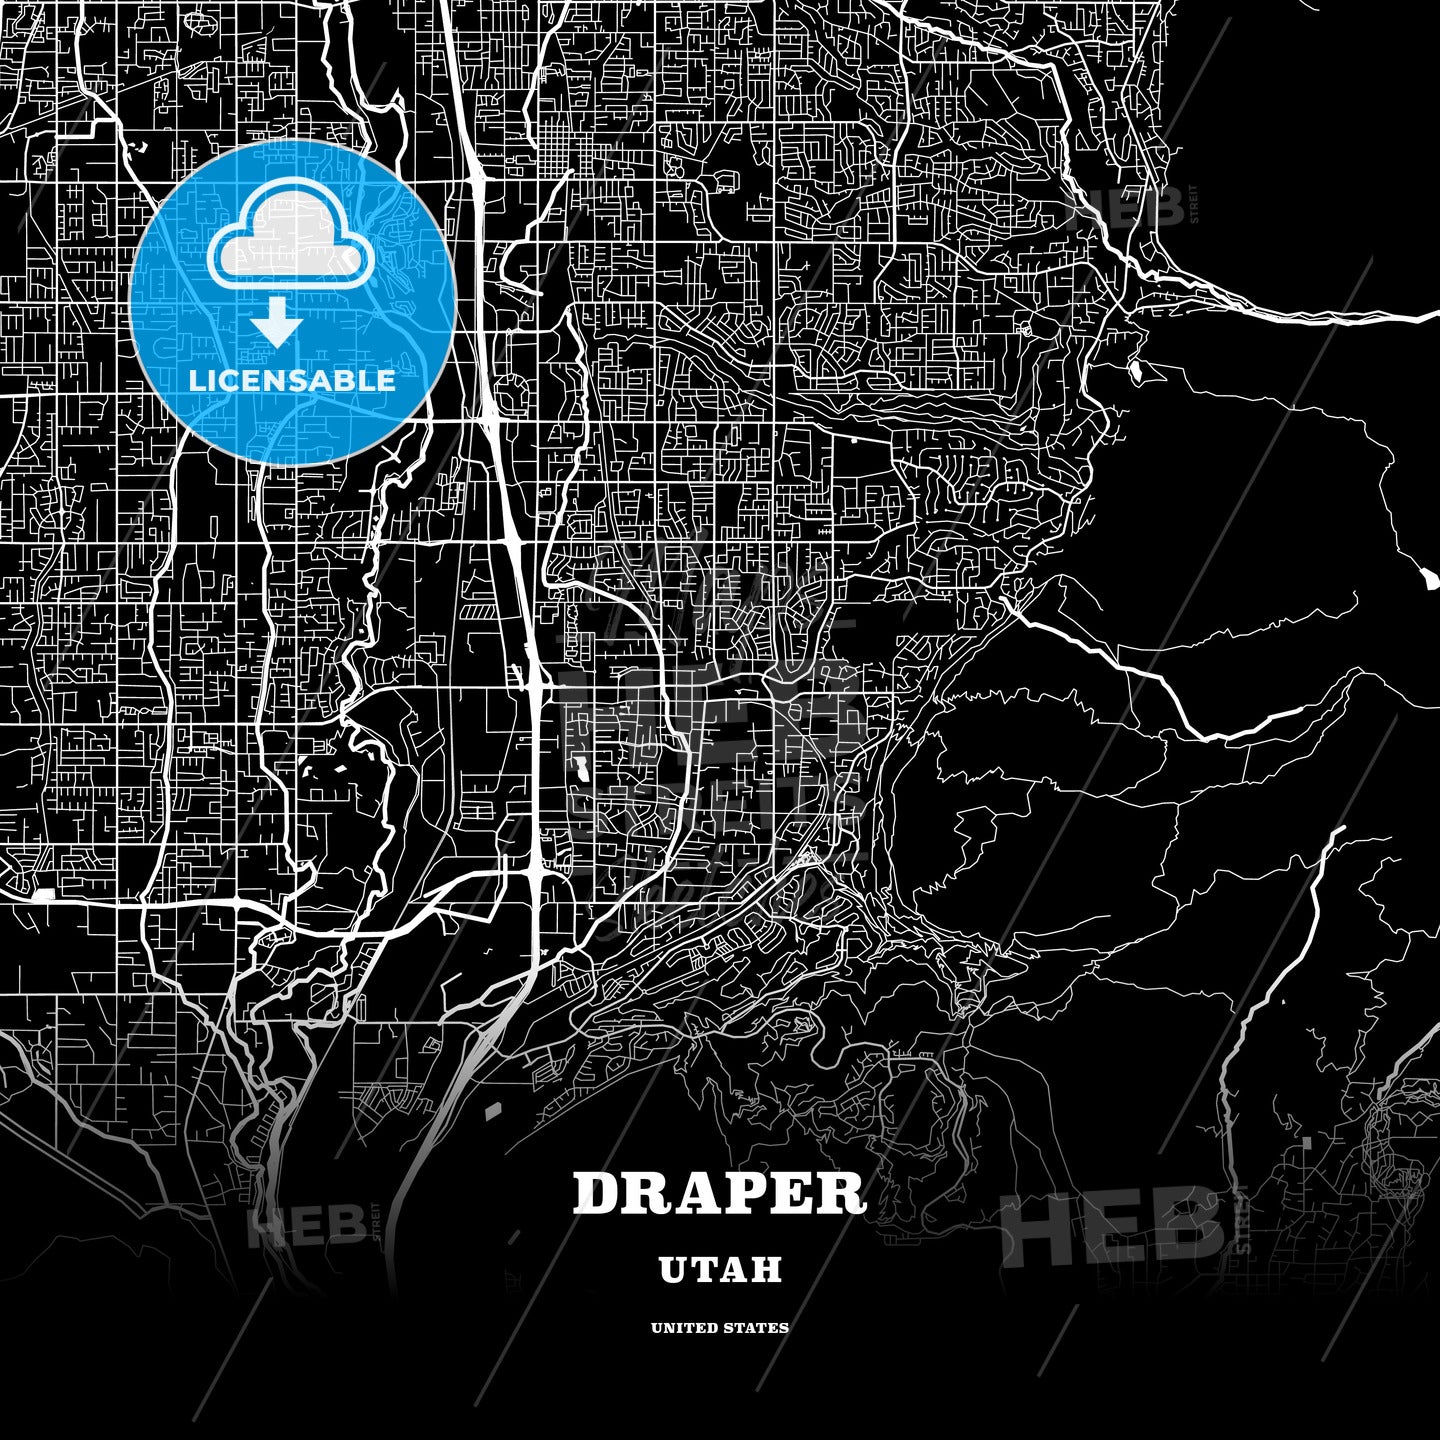 Draper, Utah, USA map